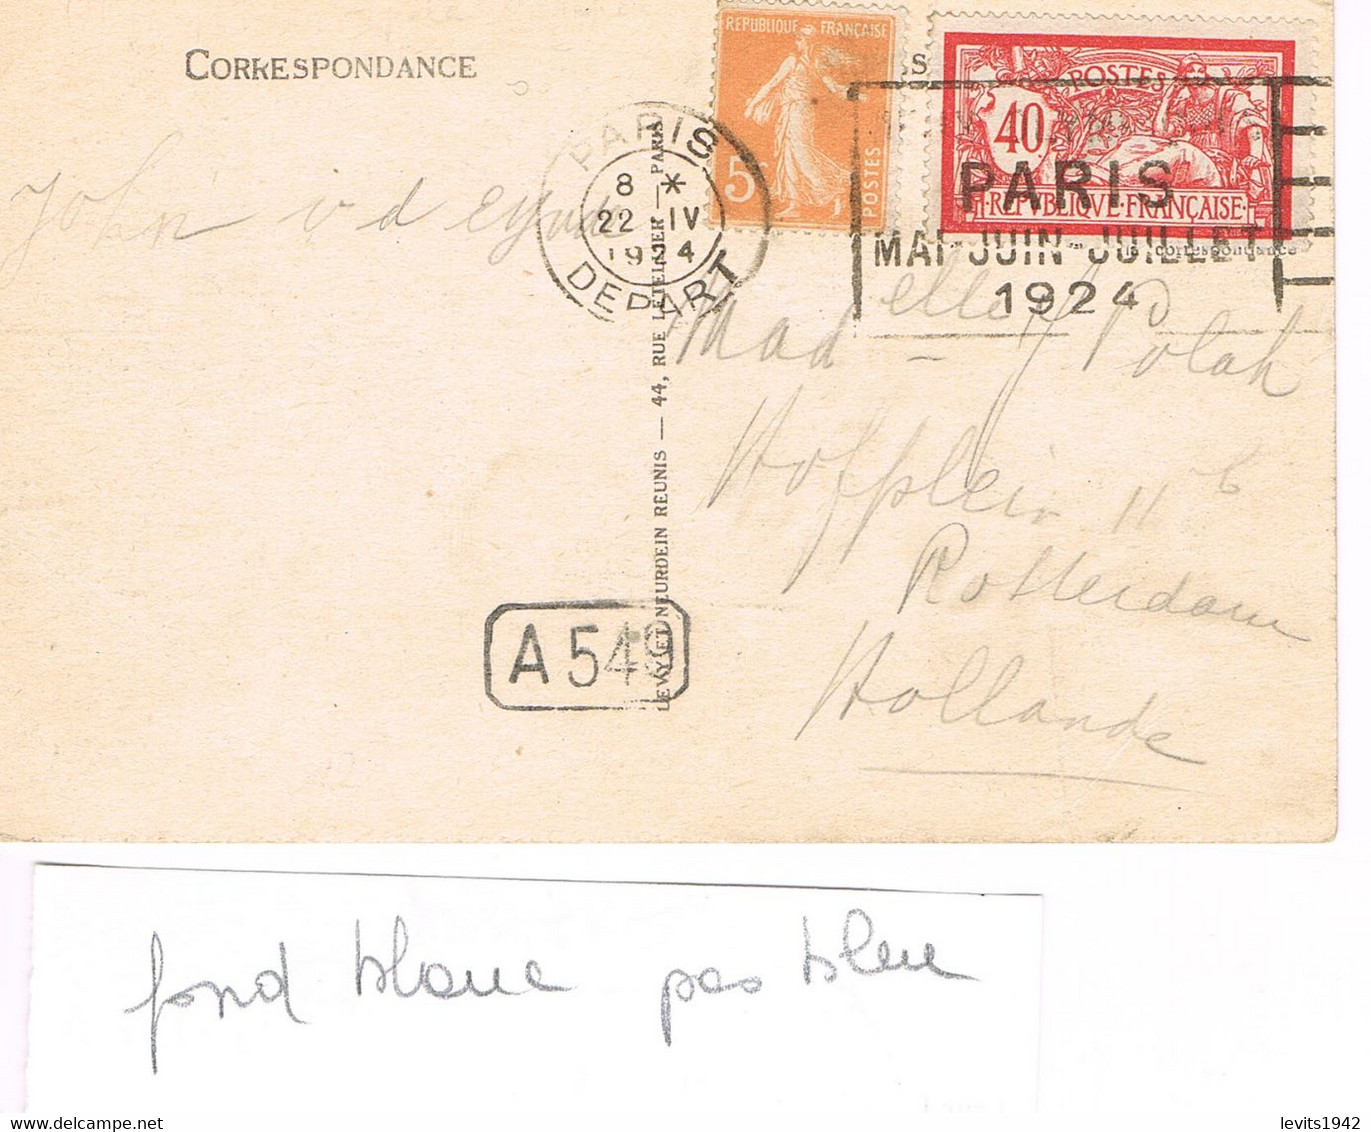 MARQUE POSTALE -  JEUX OLYMPIQUES 1924 - PARIS DEPART - 22-04-1924 - AFFRANCHISSEMENT 45 Cts - - Sommer 1924: Paris